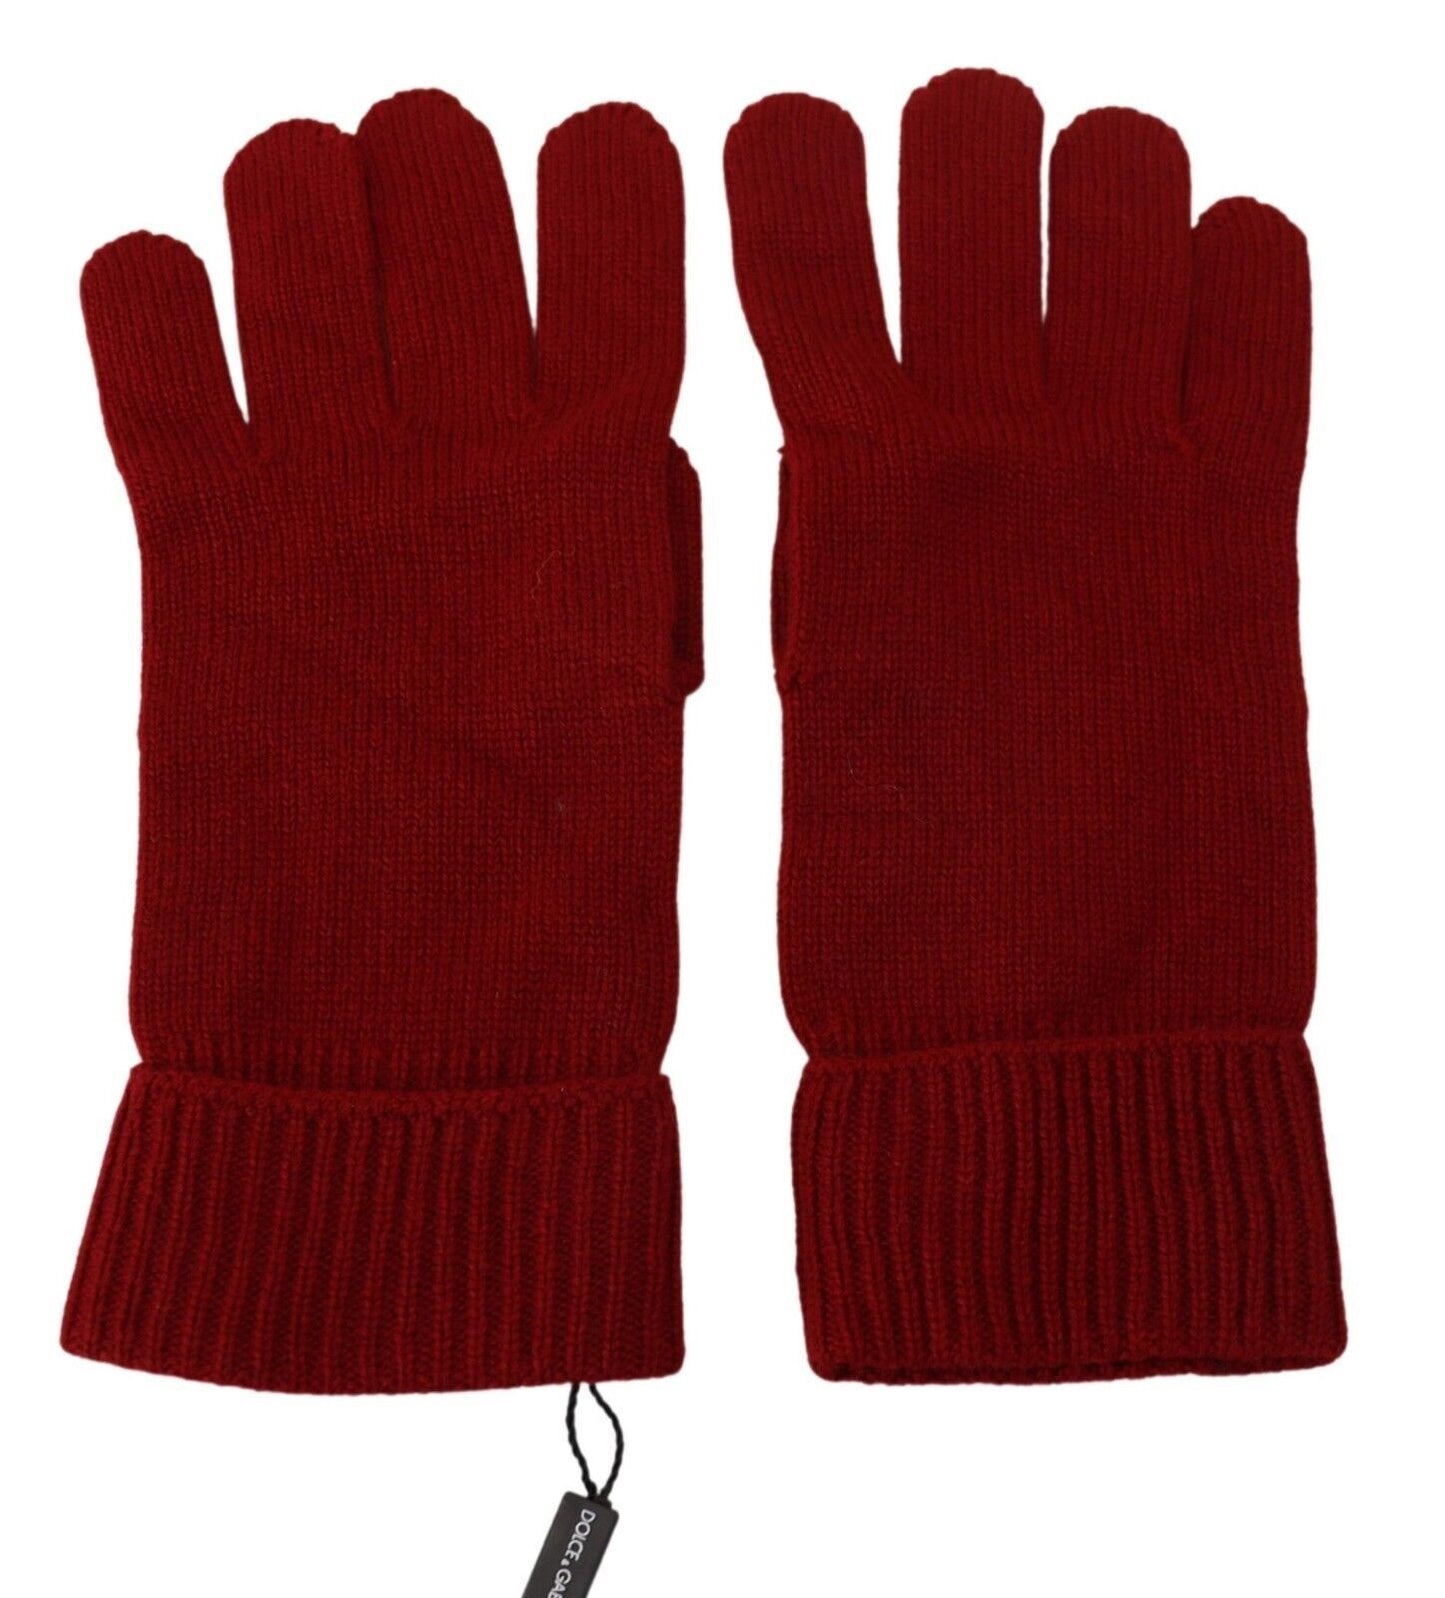 Dolce & Gabbana Red 100% Cashmere Knit Hands guanti guanti da uomo